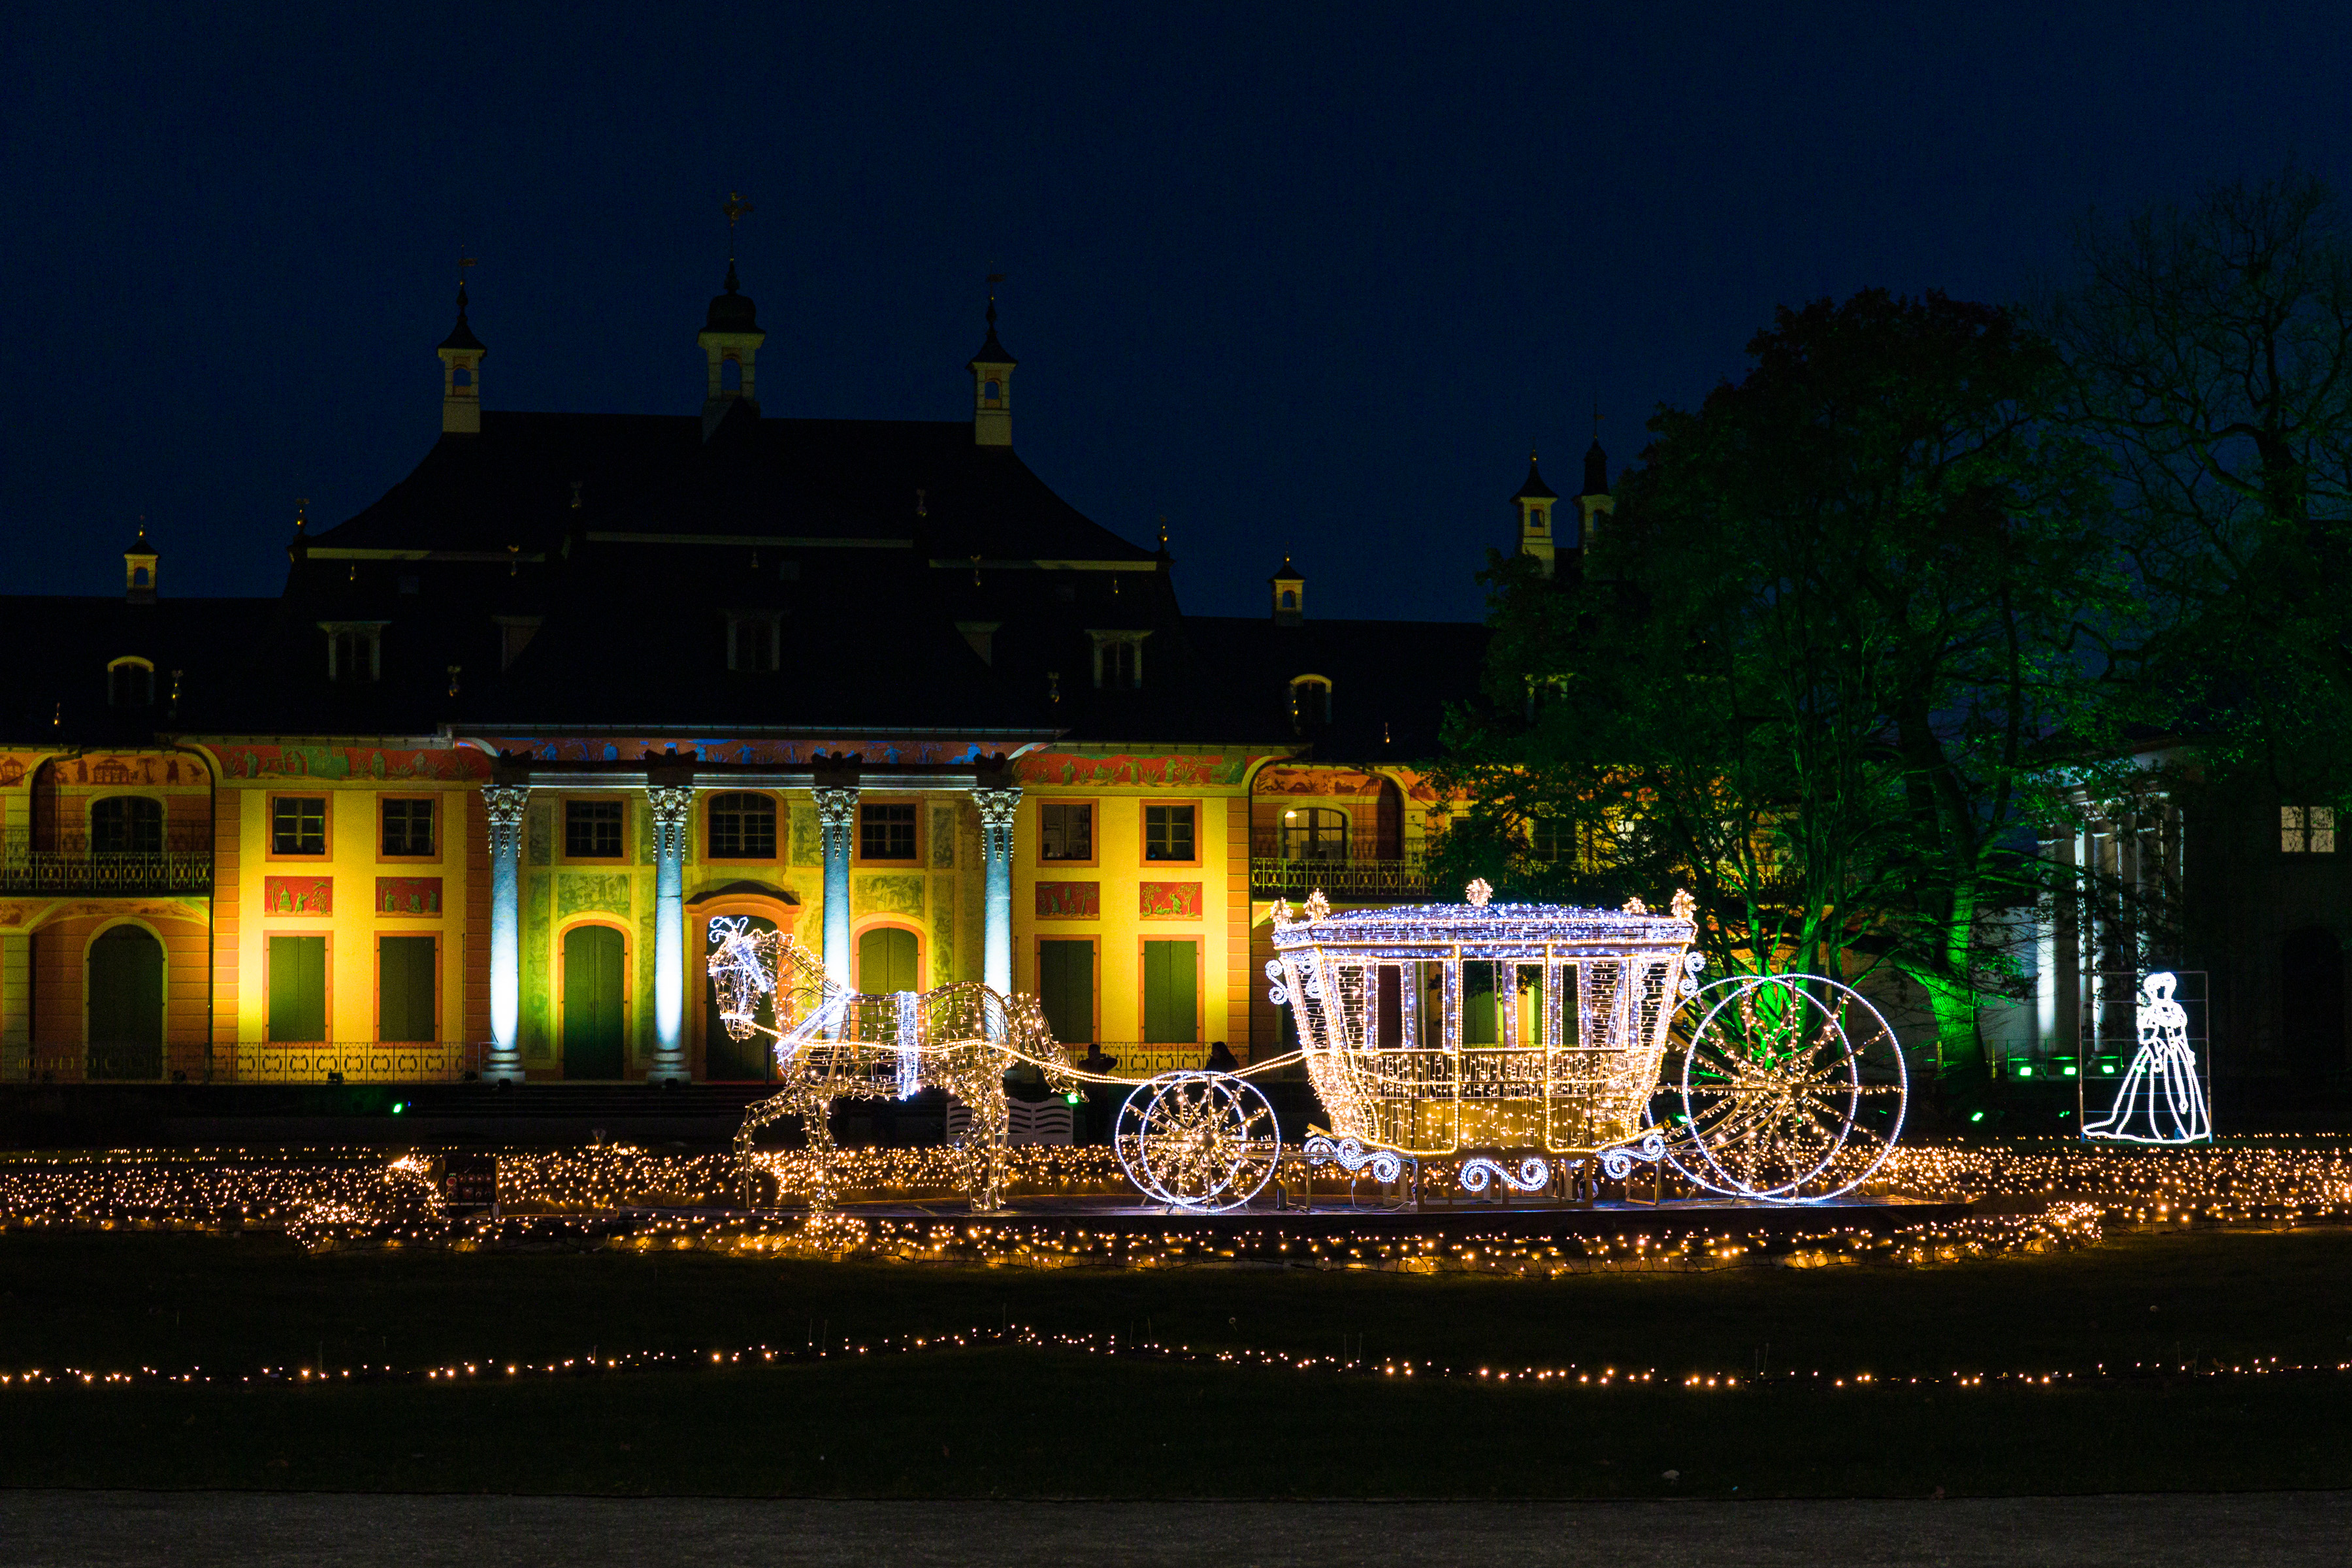 Lichtinstallation "Ankunft Graefin Cosel" im Christmas Garden Dresden